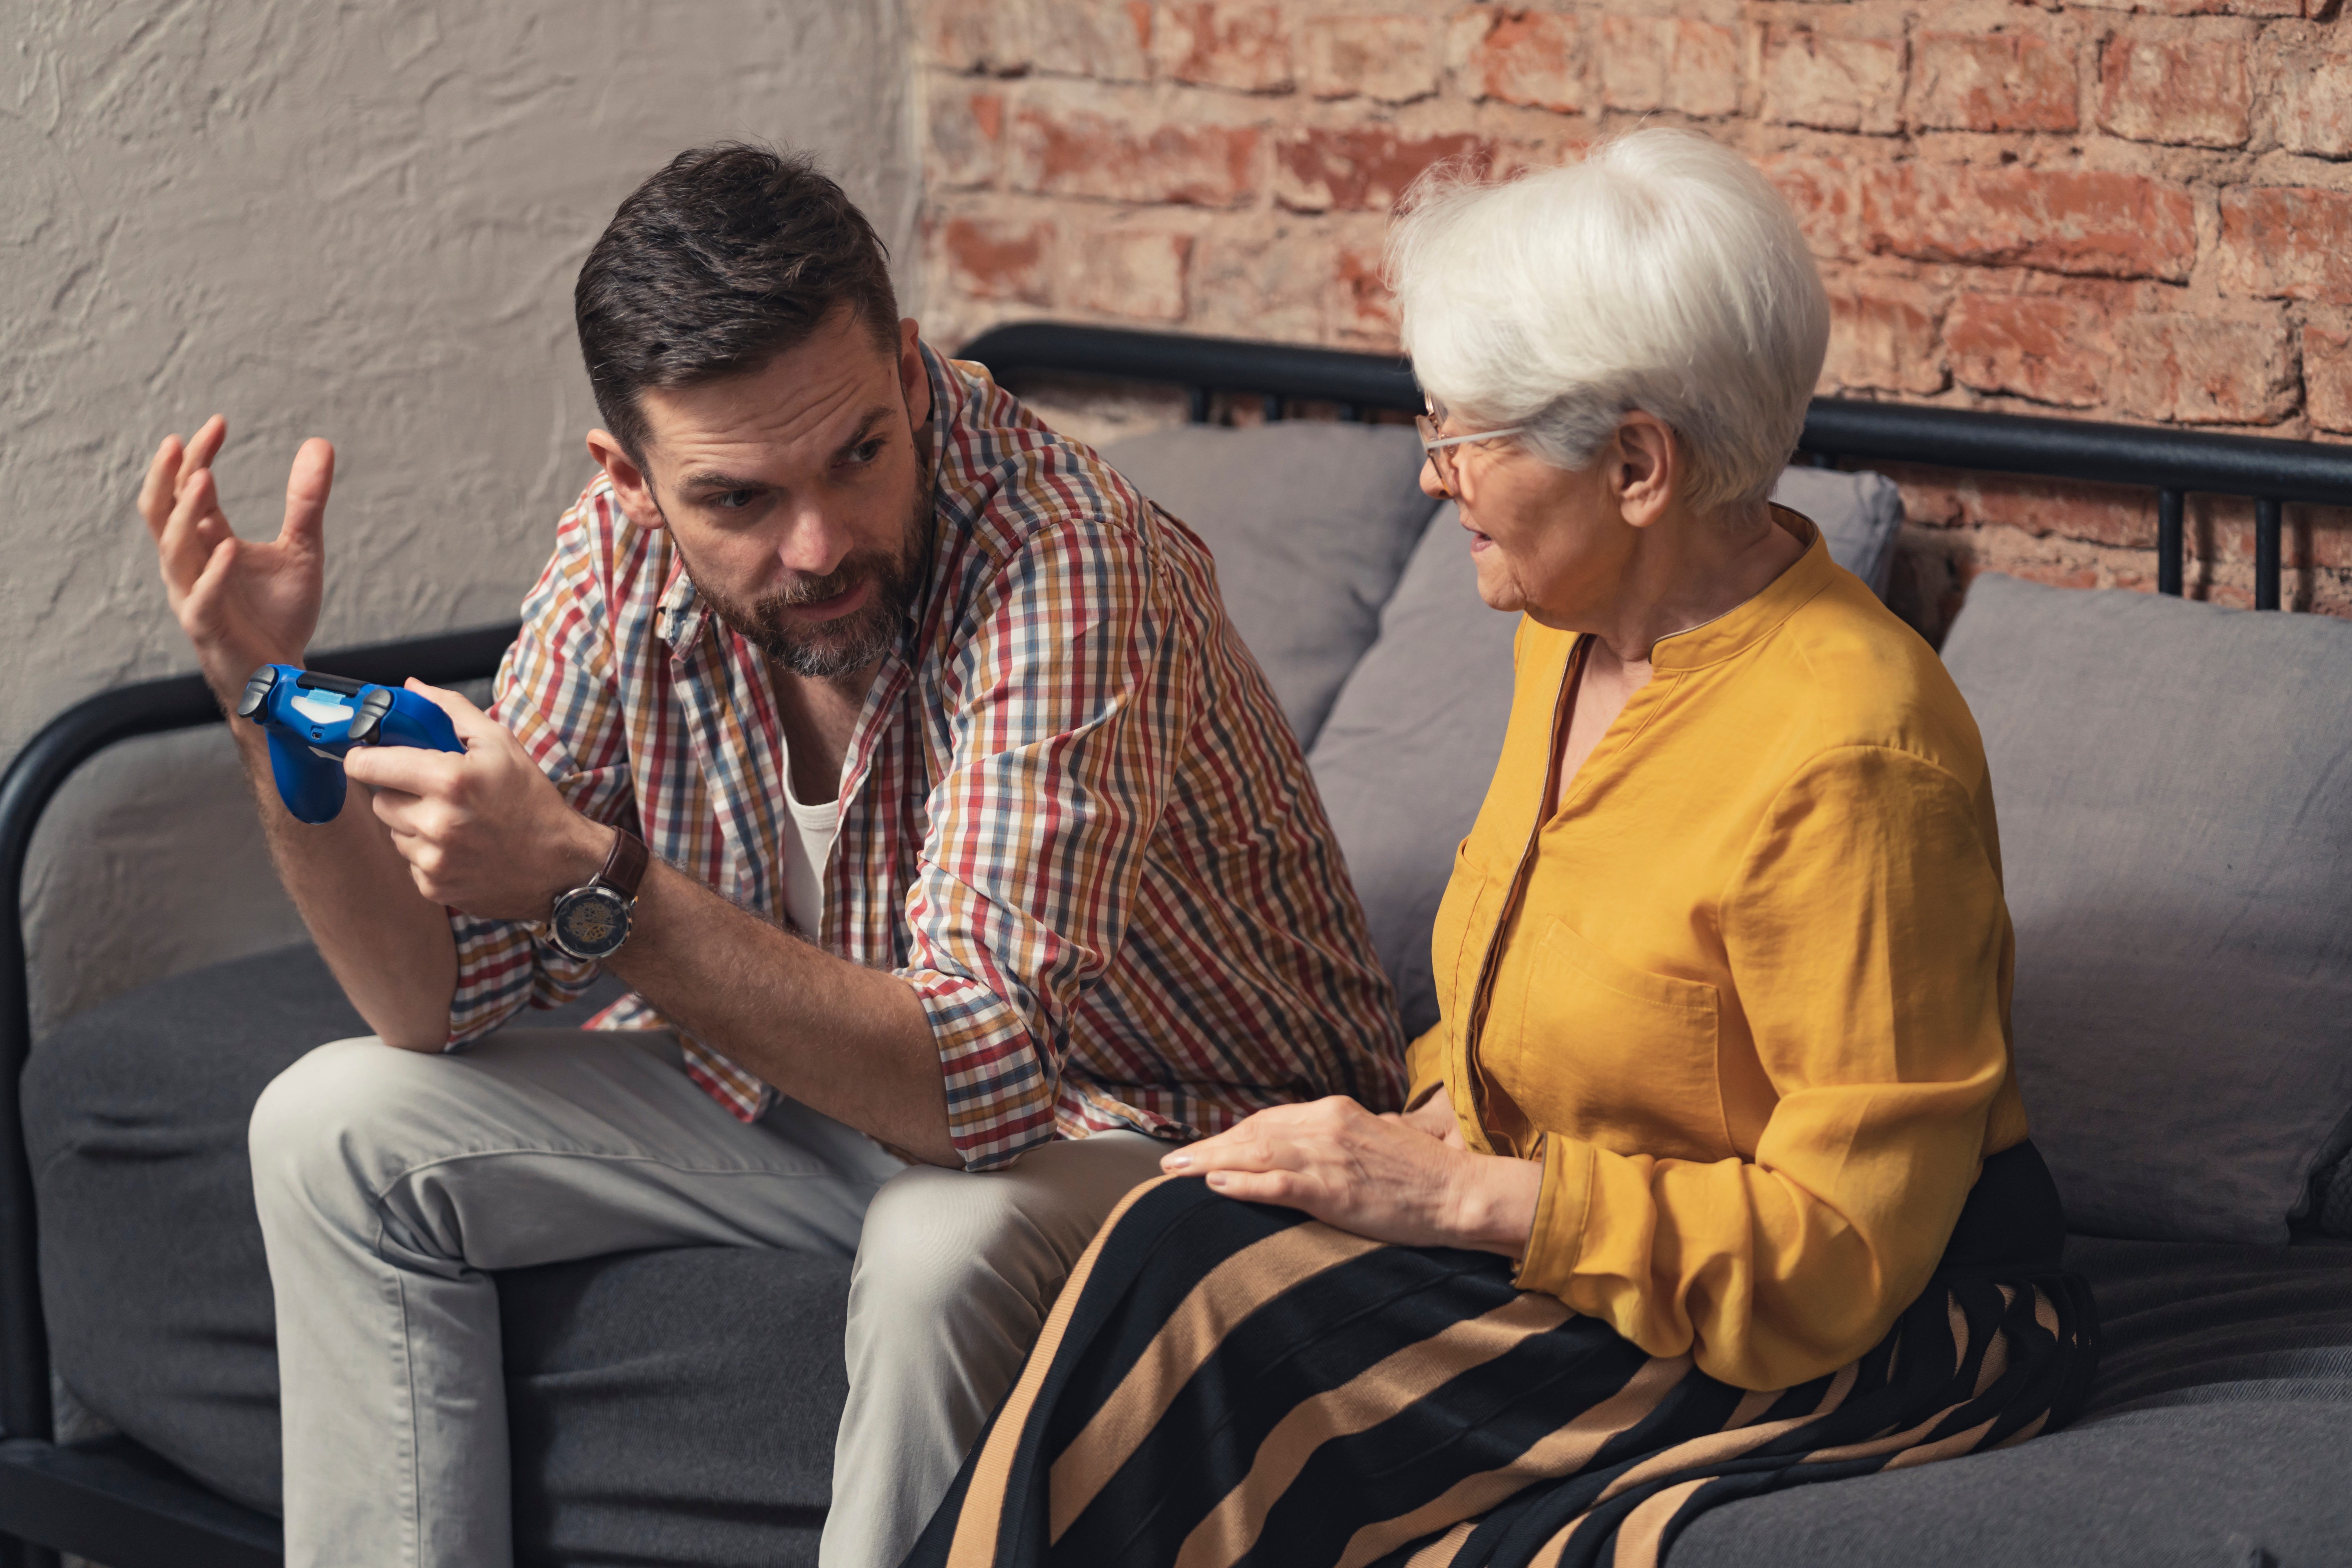 Un homme assis sur un canapé, tenant une manette de jeu vidéo et faisant des gestes avec ses mains en direction d'une dame plus âgée | Source : Shutterstock